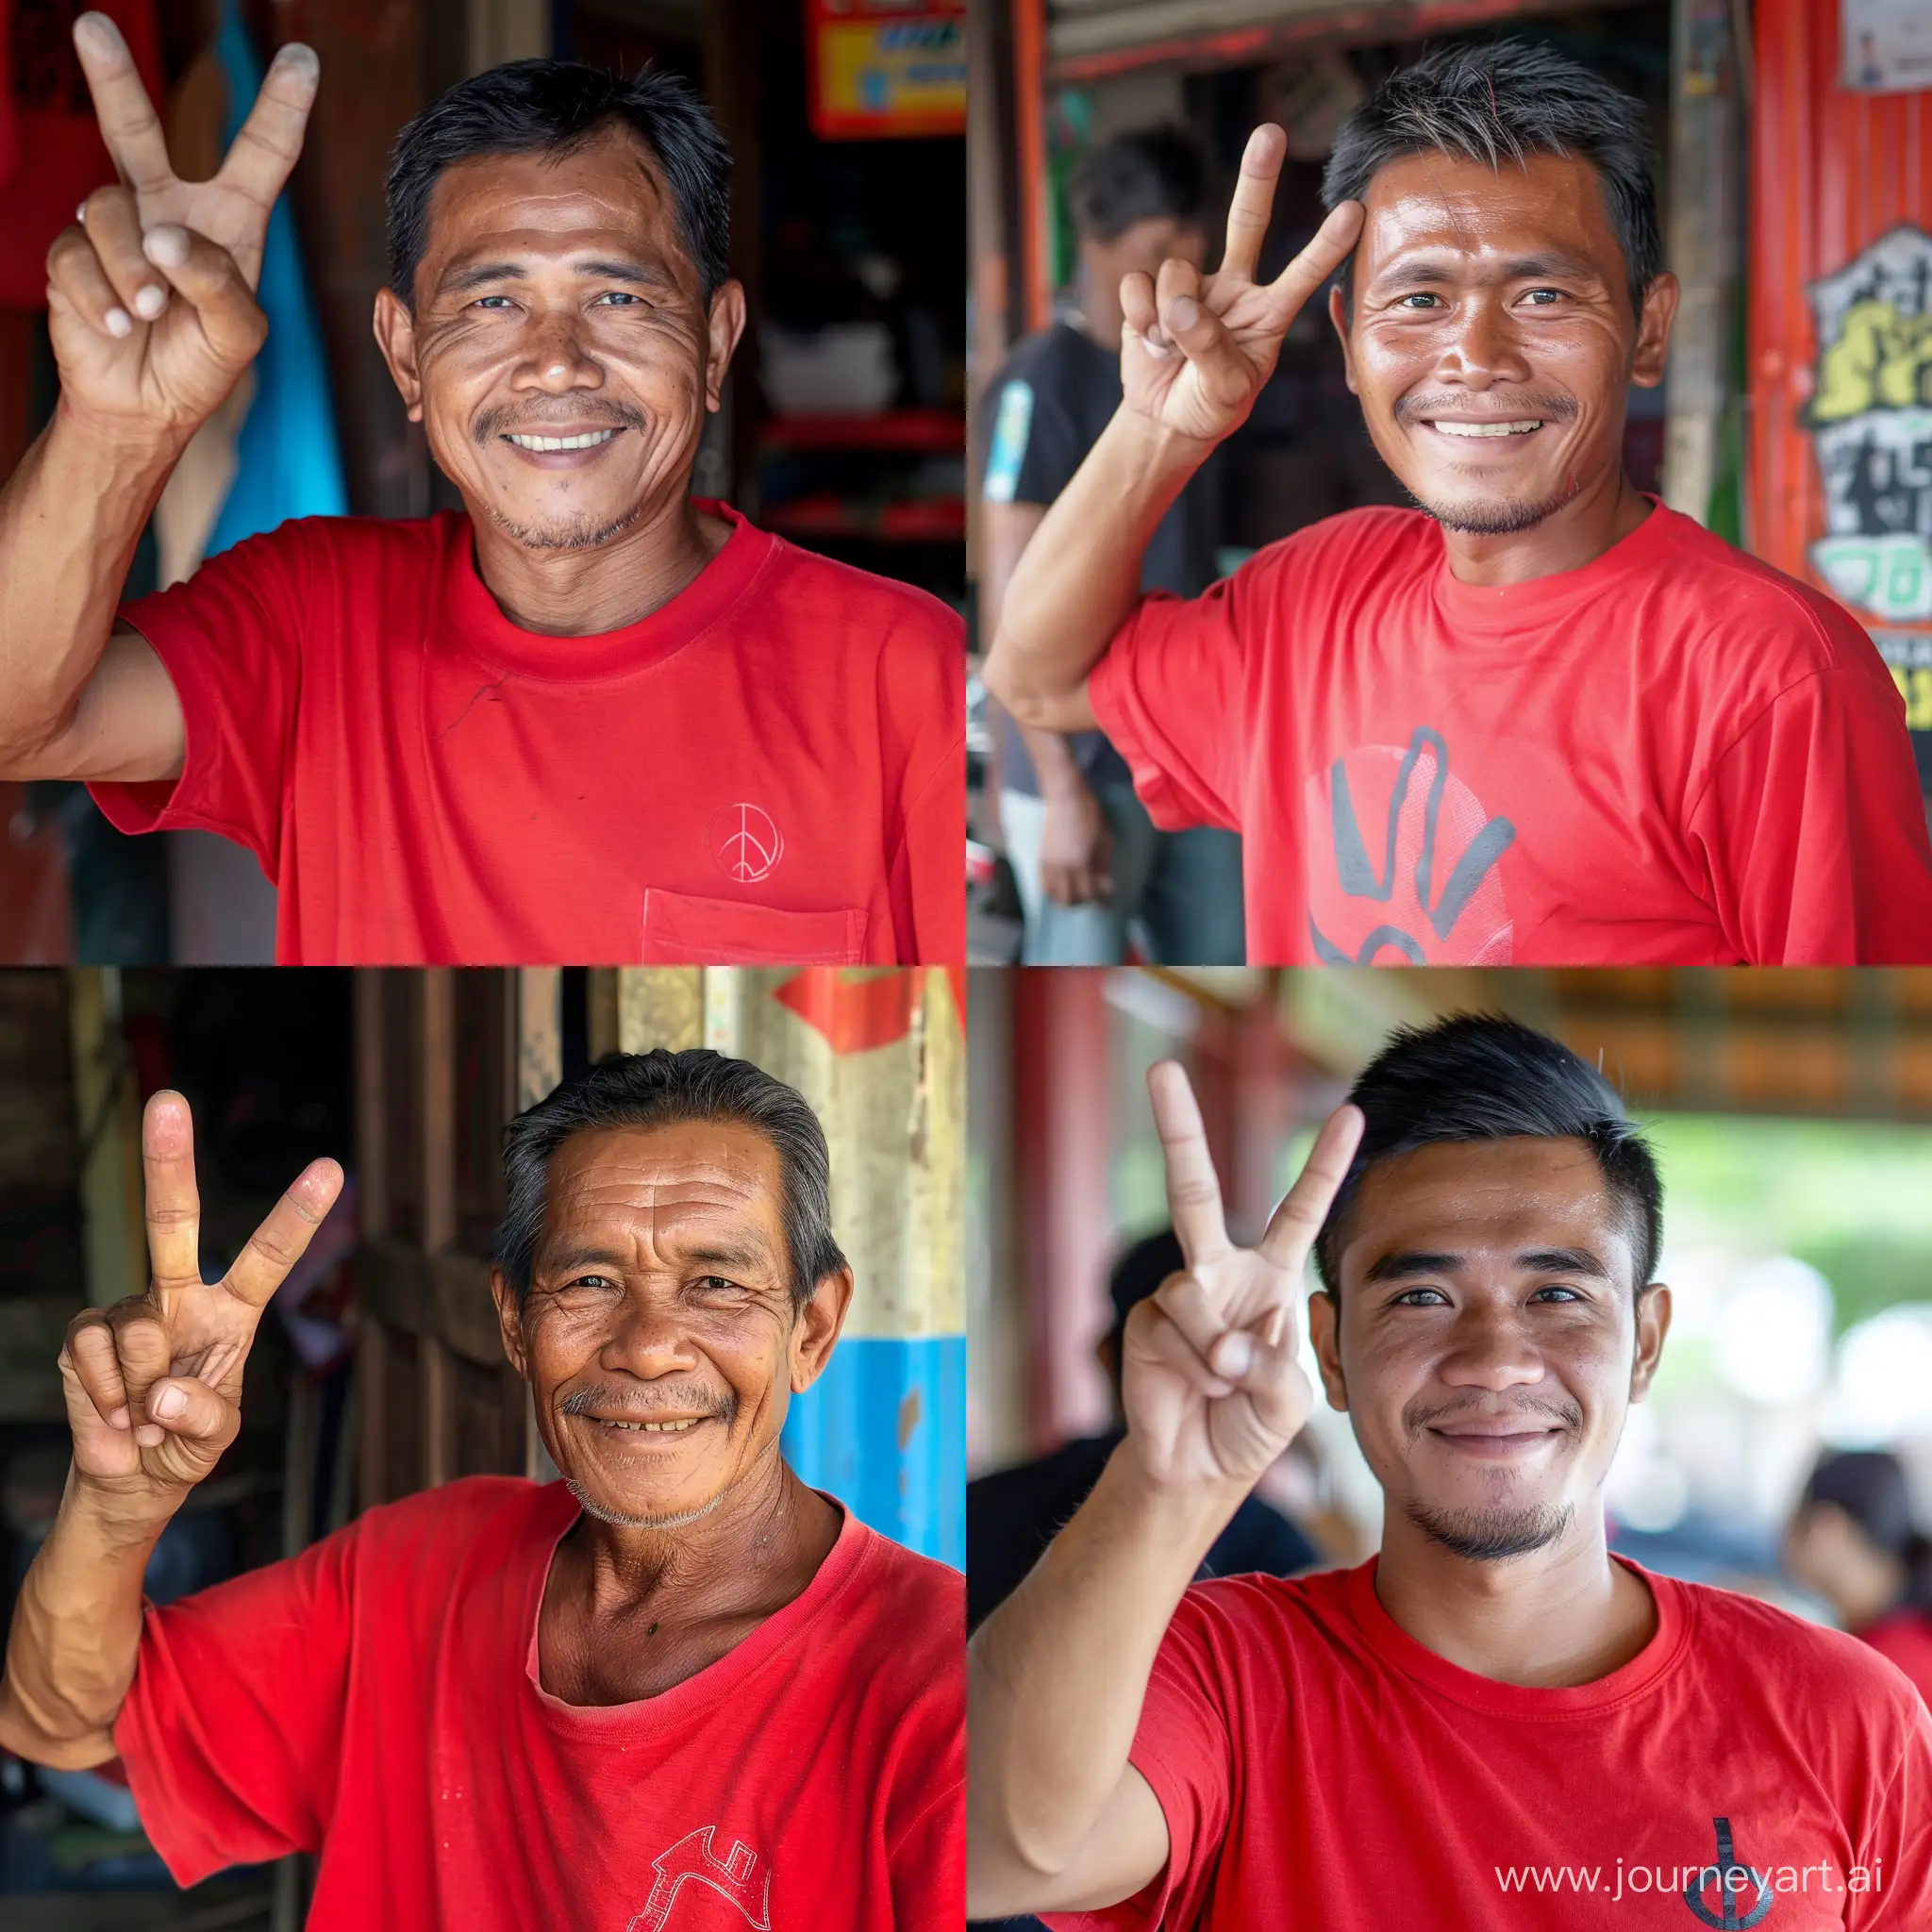 Foto seorang pria indonesia,baju hem merah,tanda dua jari,tersenyum